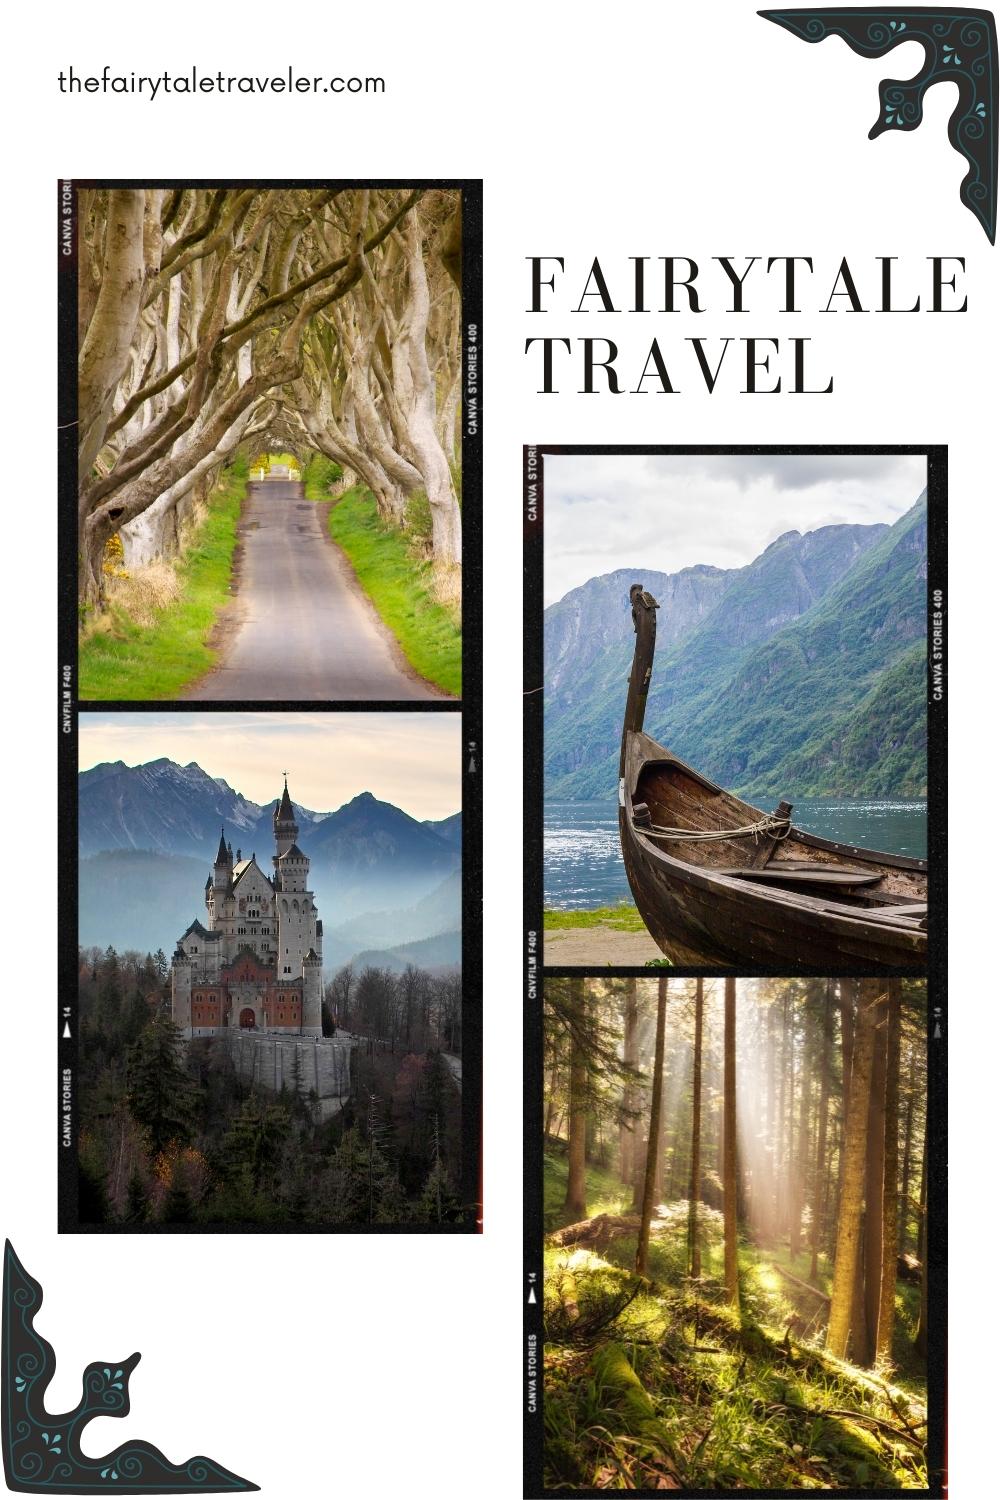 Fairytale Travel, the fairytale traveler